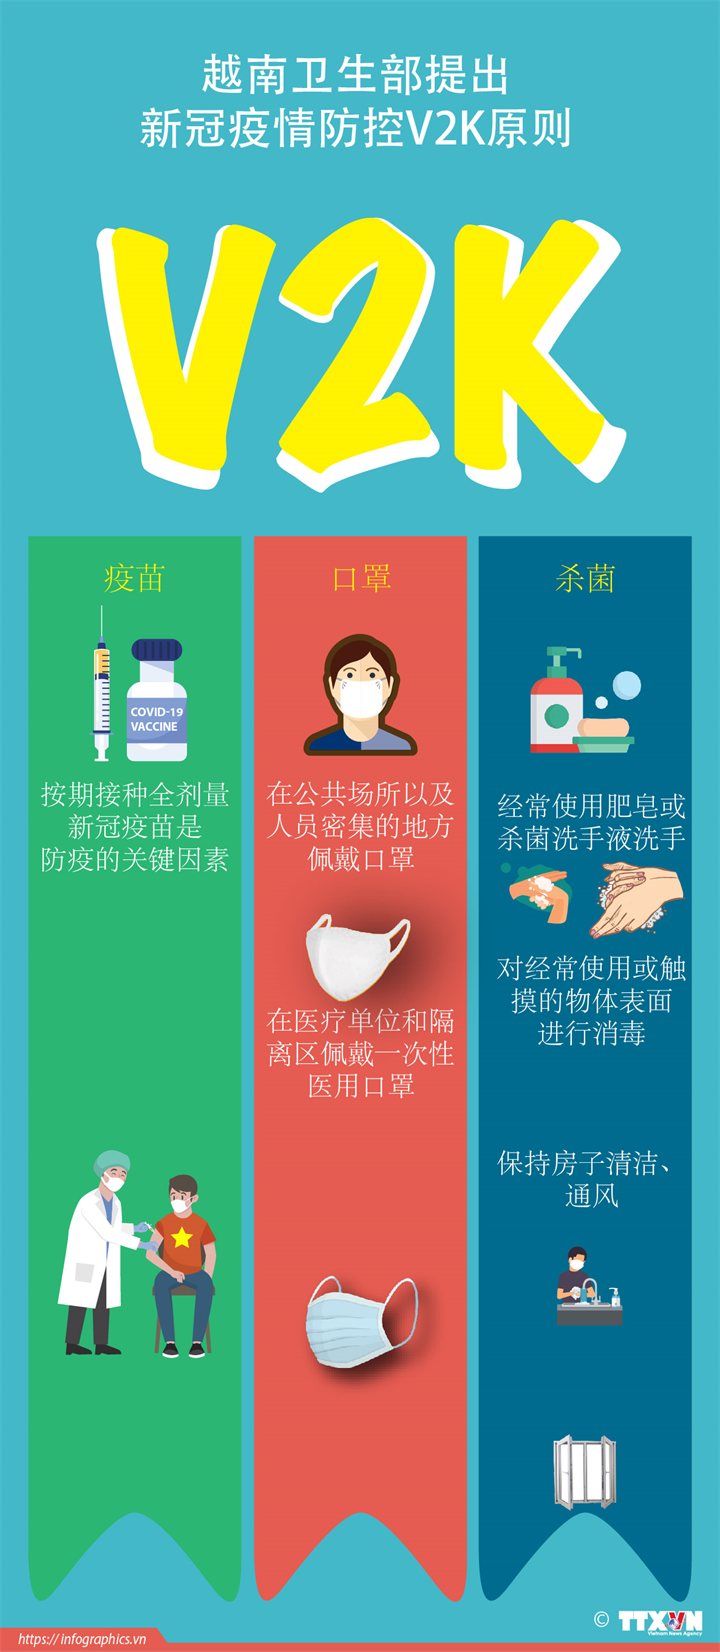 越南卫生部提出新冠疫情防控V2K原则